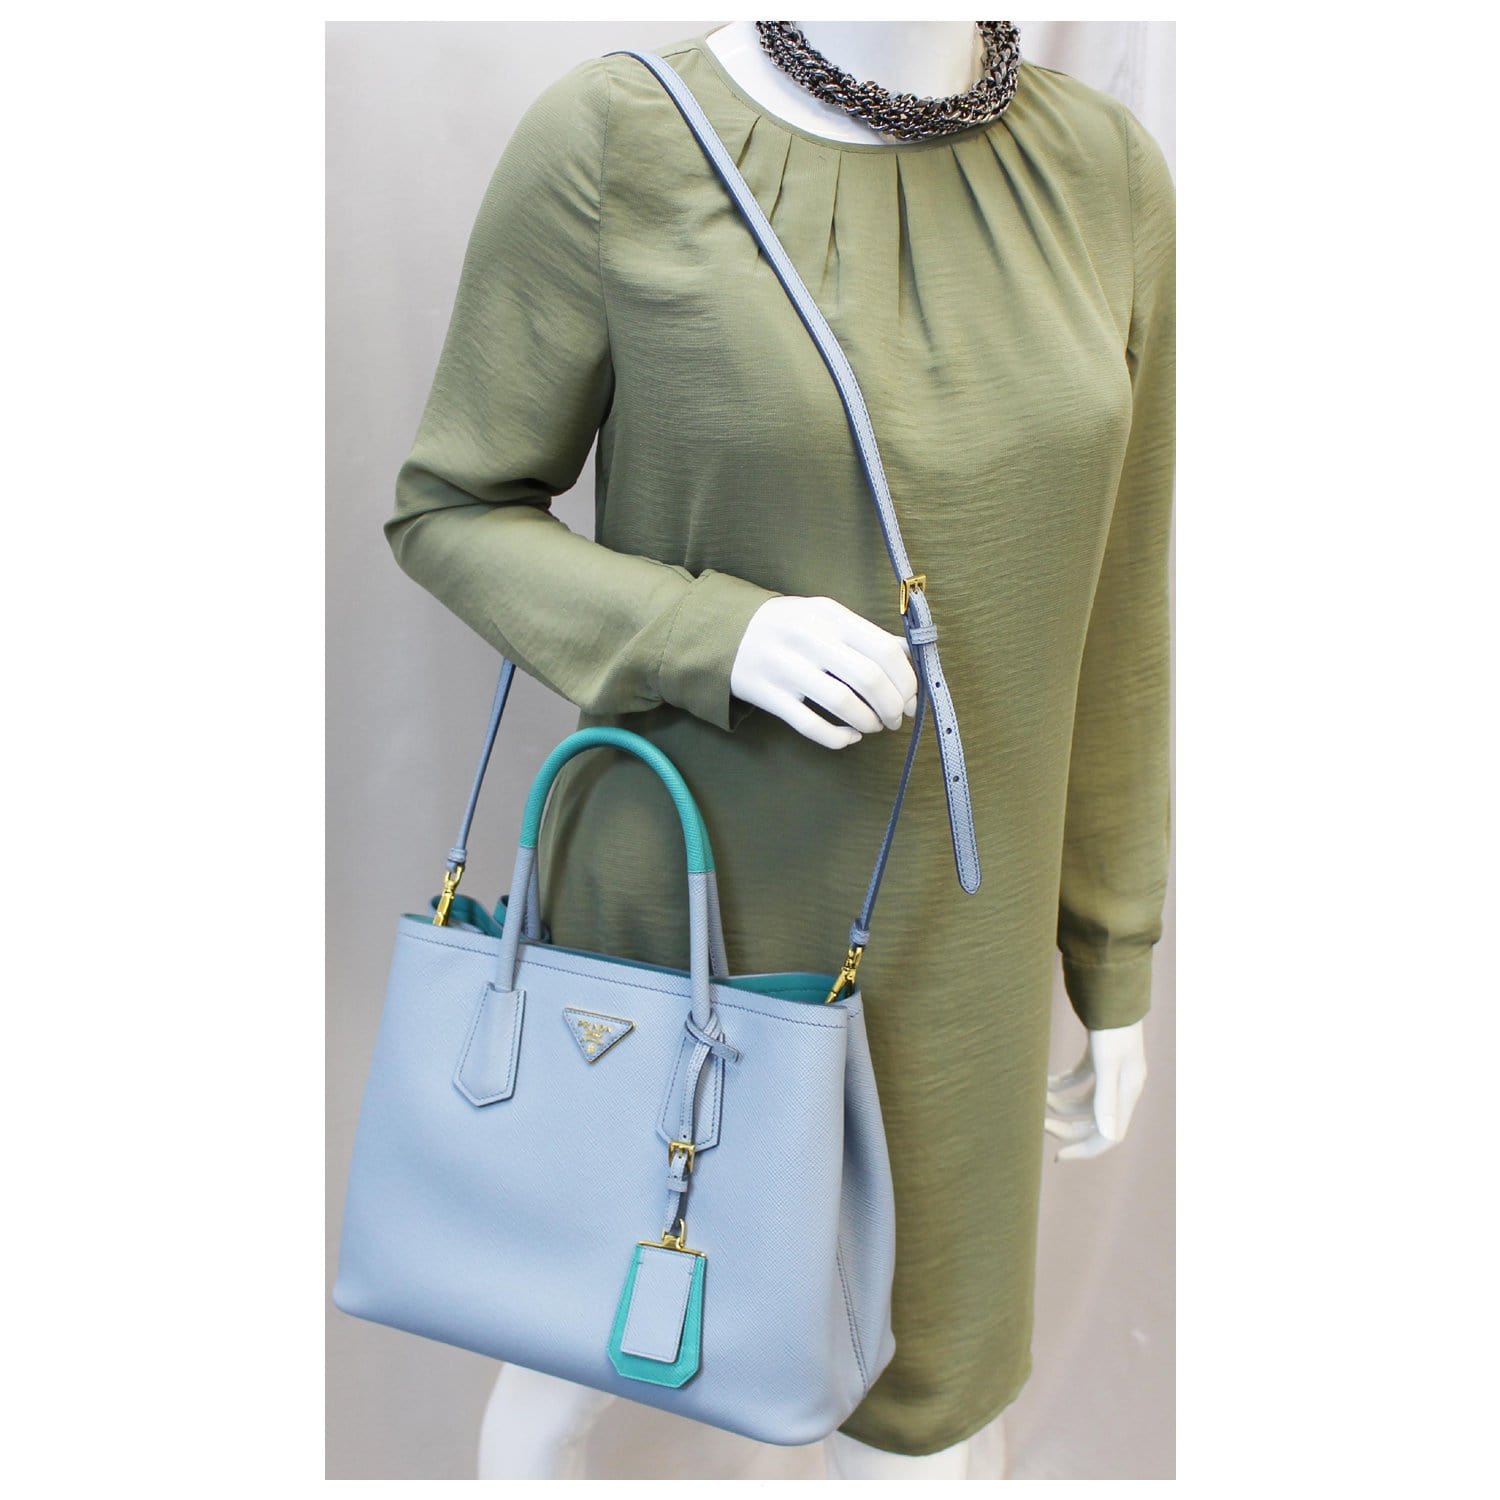 Prada Light blue Saffiano handbag